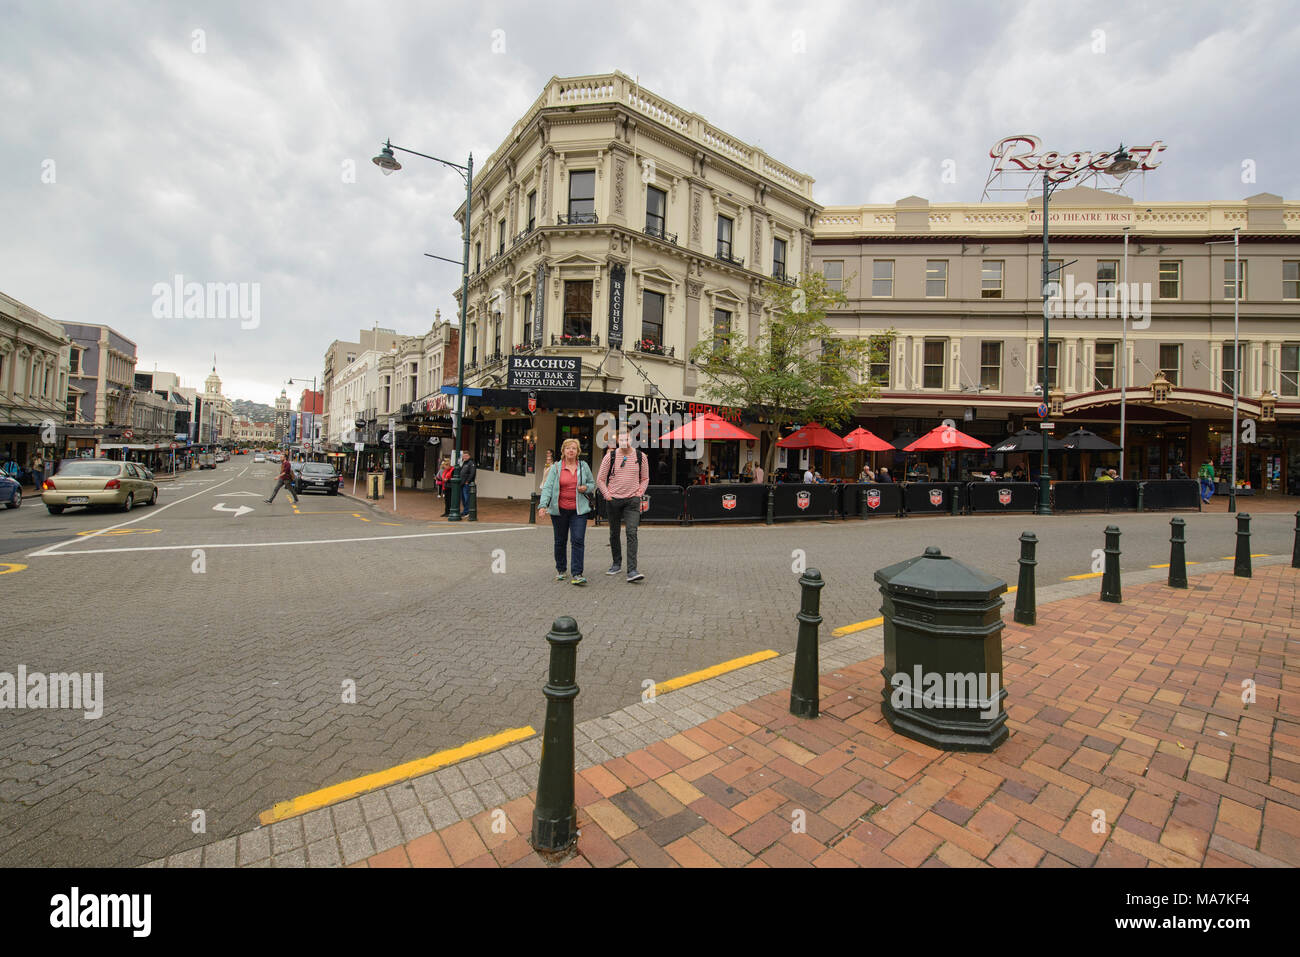 City life in Dunedin, New Zealand Stock Photo